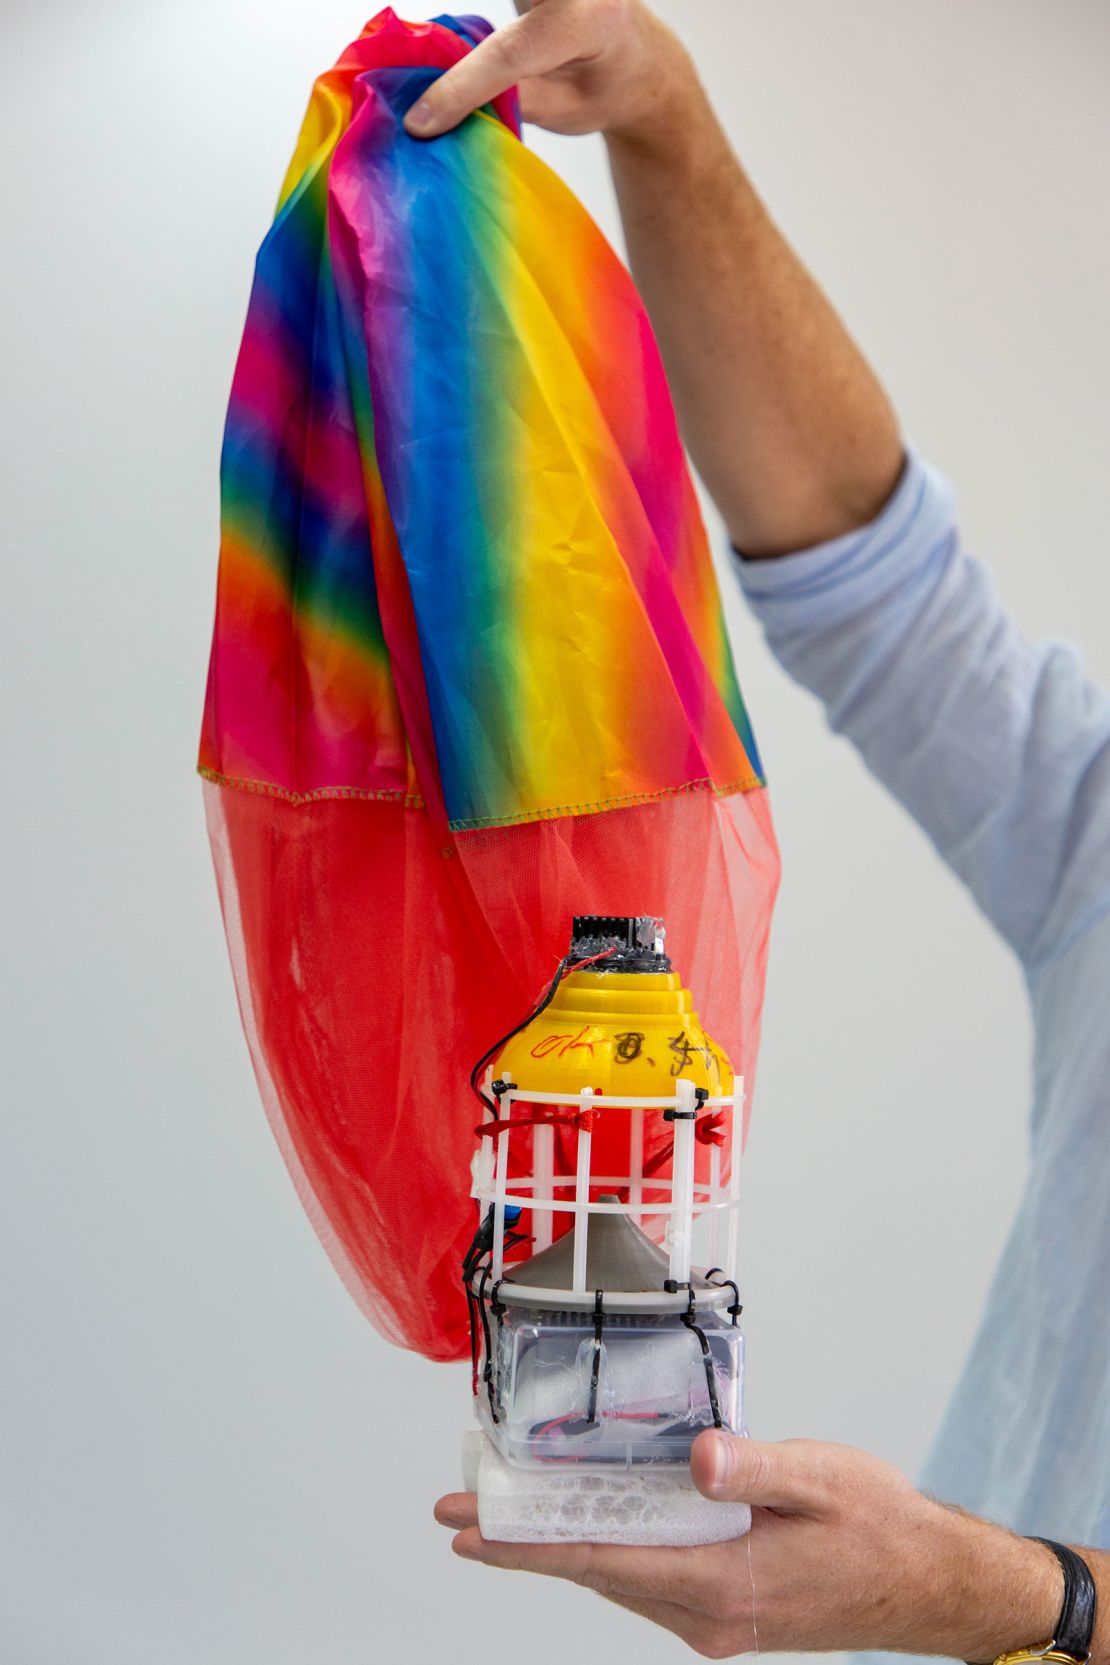 I palloncini sono dotati di altoparlanti attaccati al paracadute arcobaleno che trasmettono messaggi di propaganda.